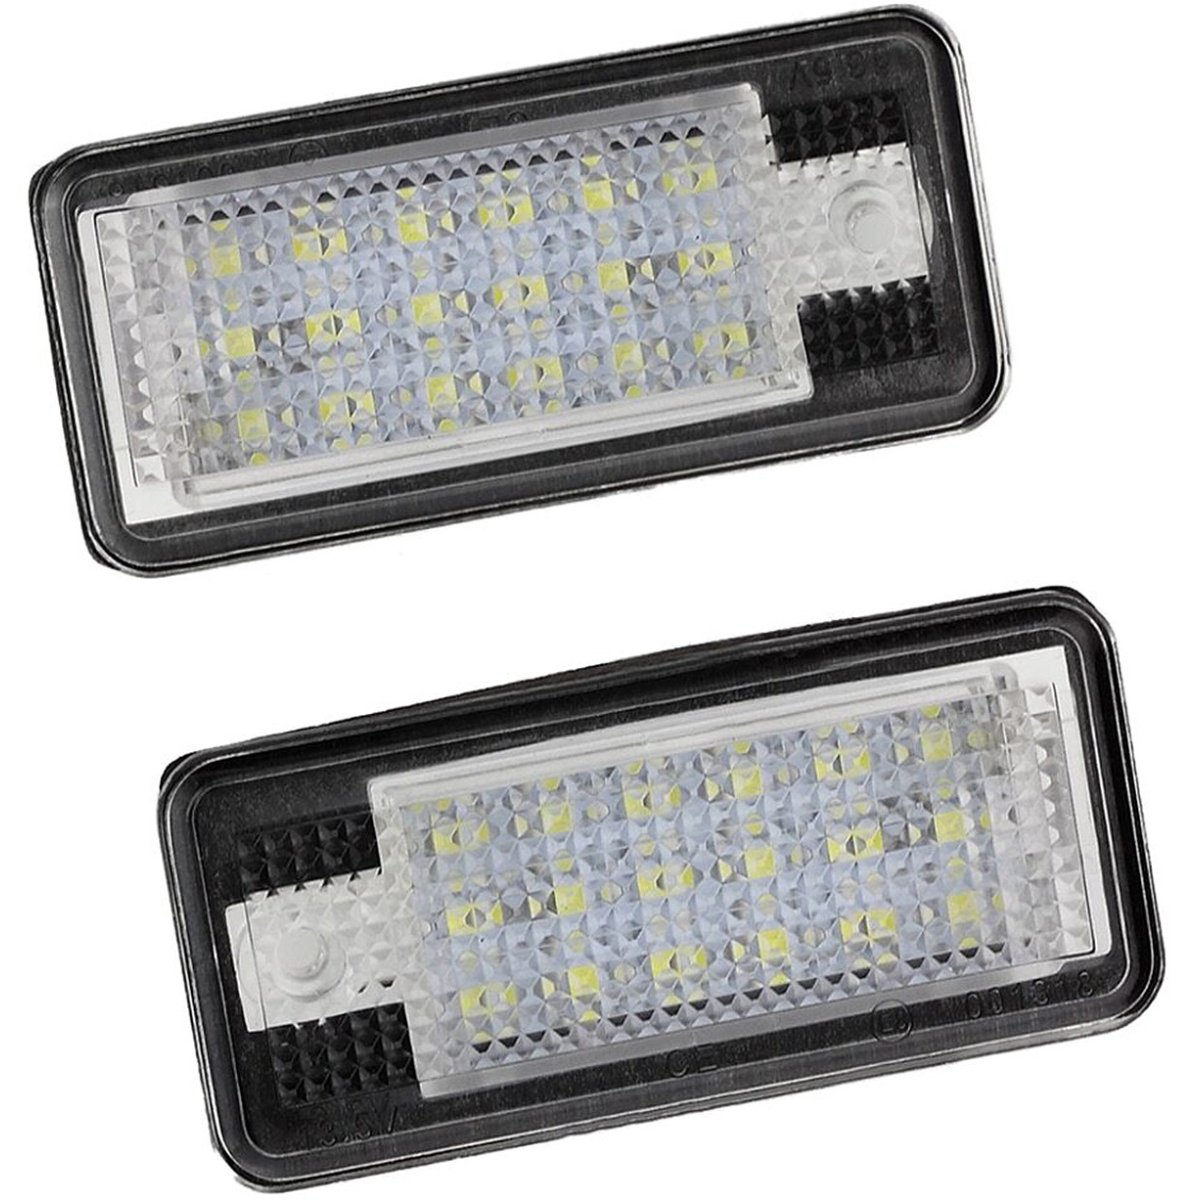 Kpl. lampek LED do podświetlenia tablicy rejestracyjnej (Audi)